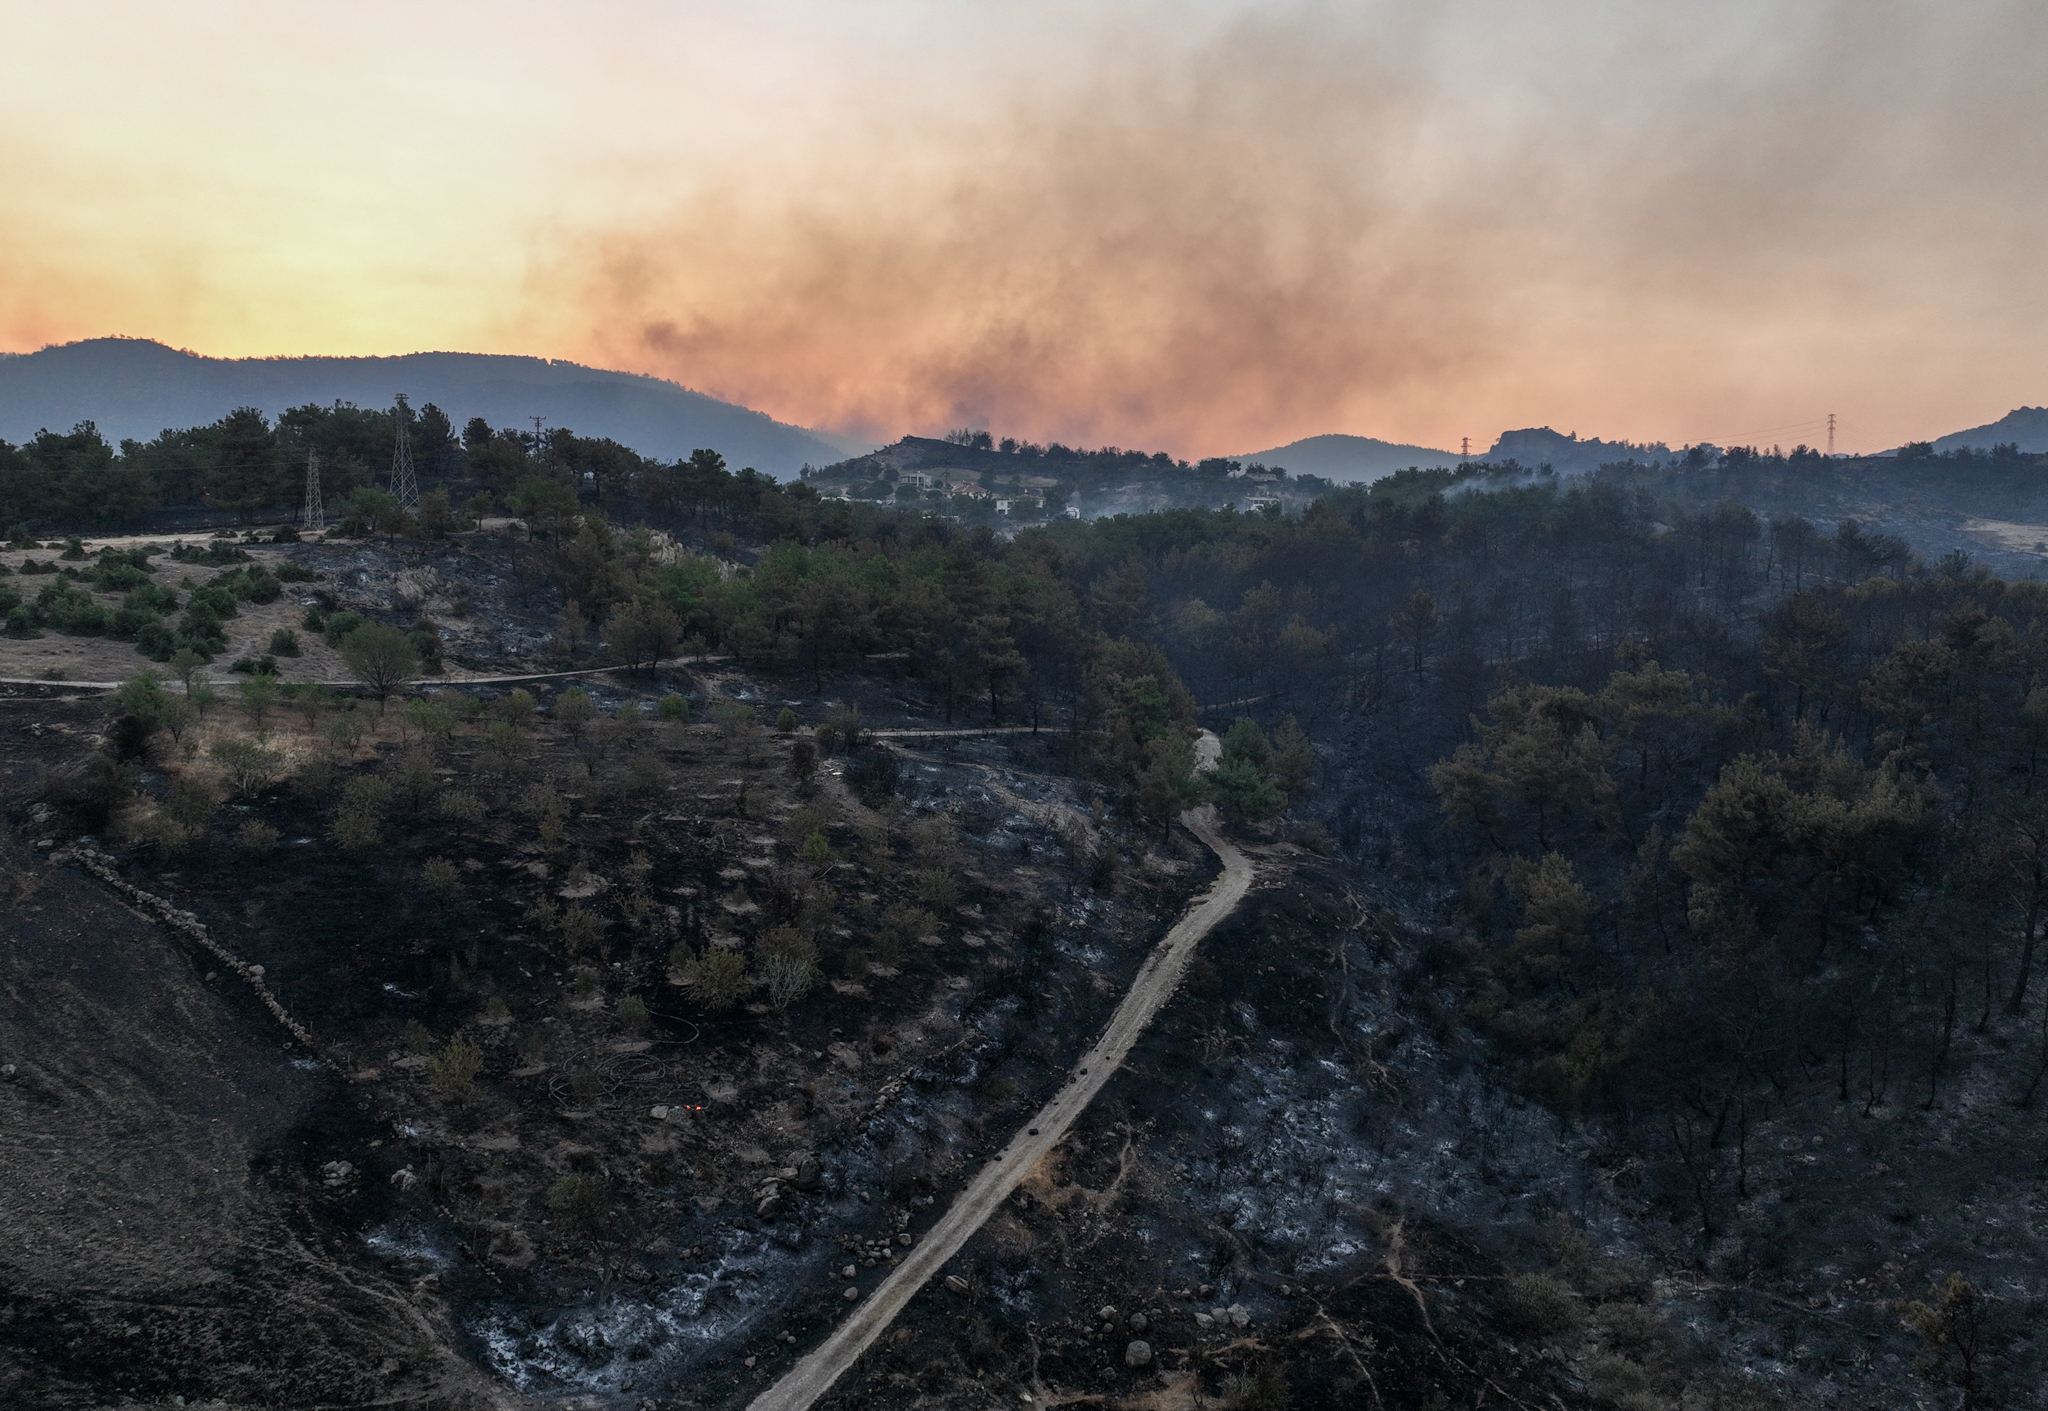 aa-20230823-31975009-31975008-efforts-to-extinguish-wildfire-continue-in-western-turkiye.jpg